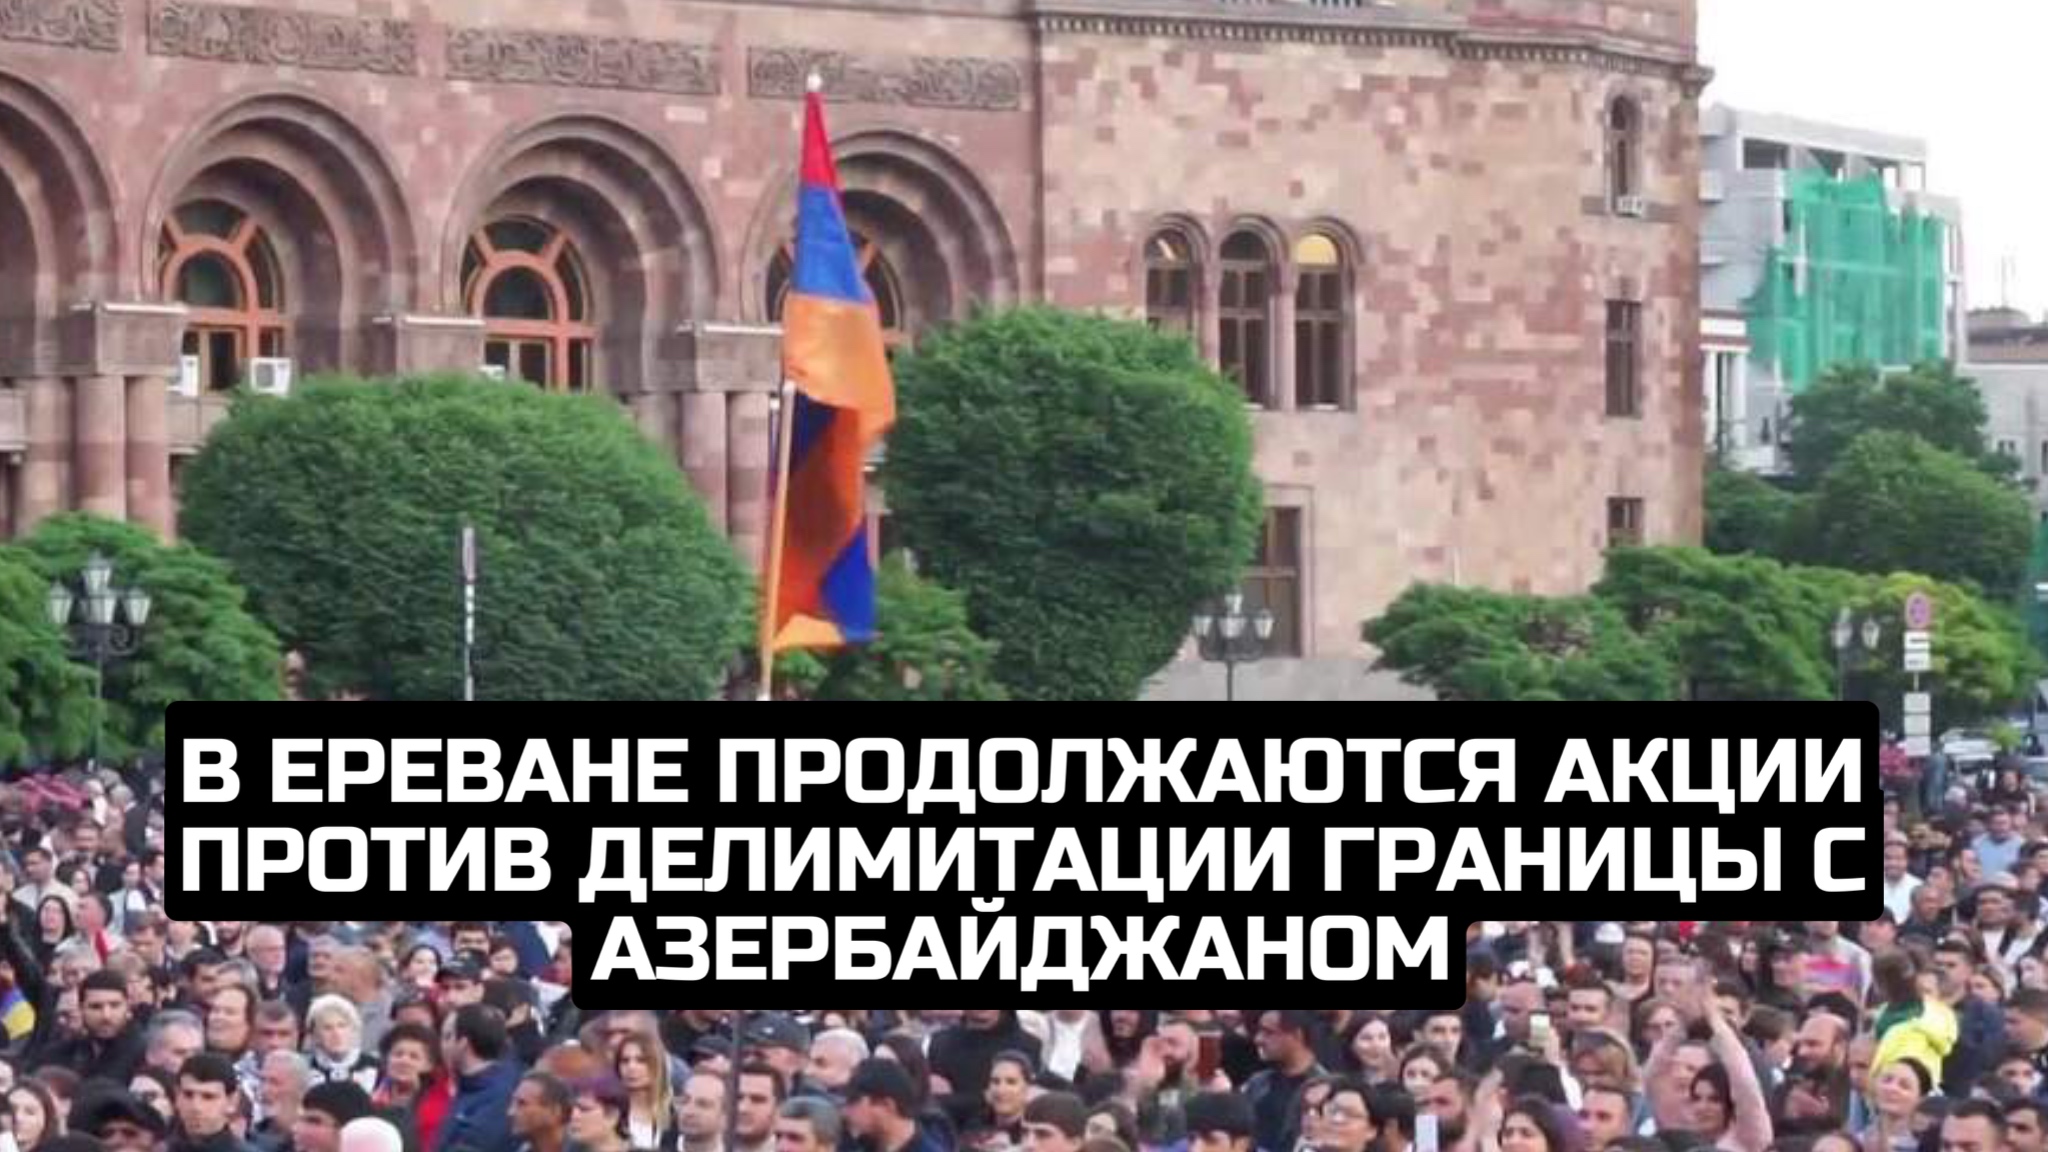 В Ереване продолжаются акции против делимитации границы с Азербайджаном